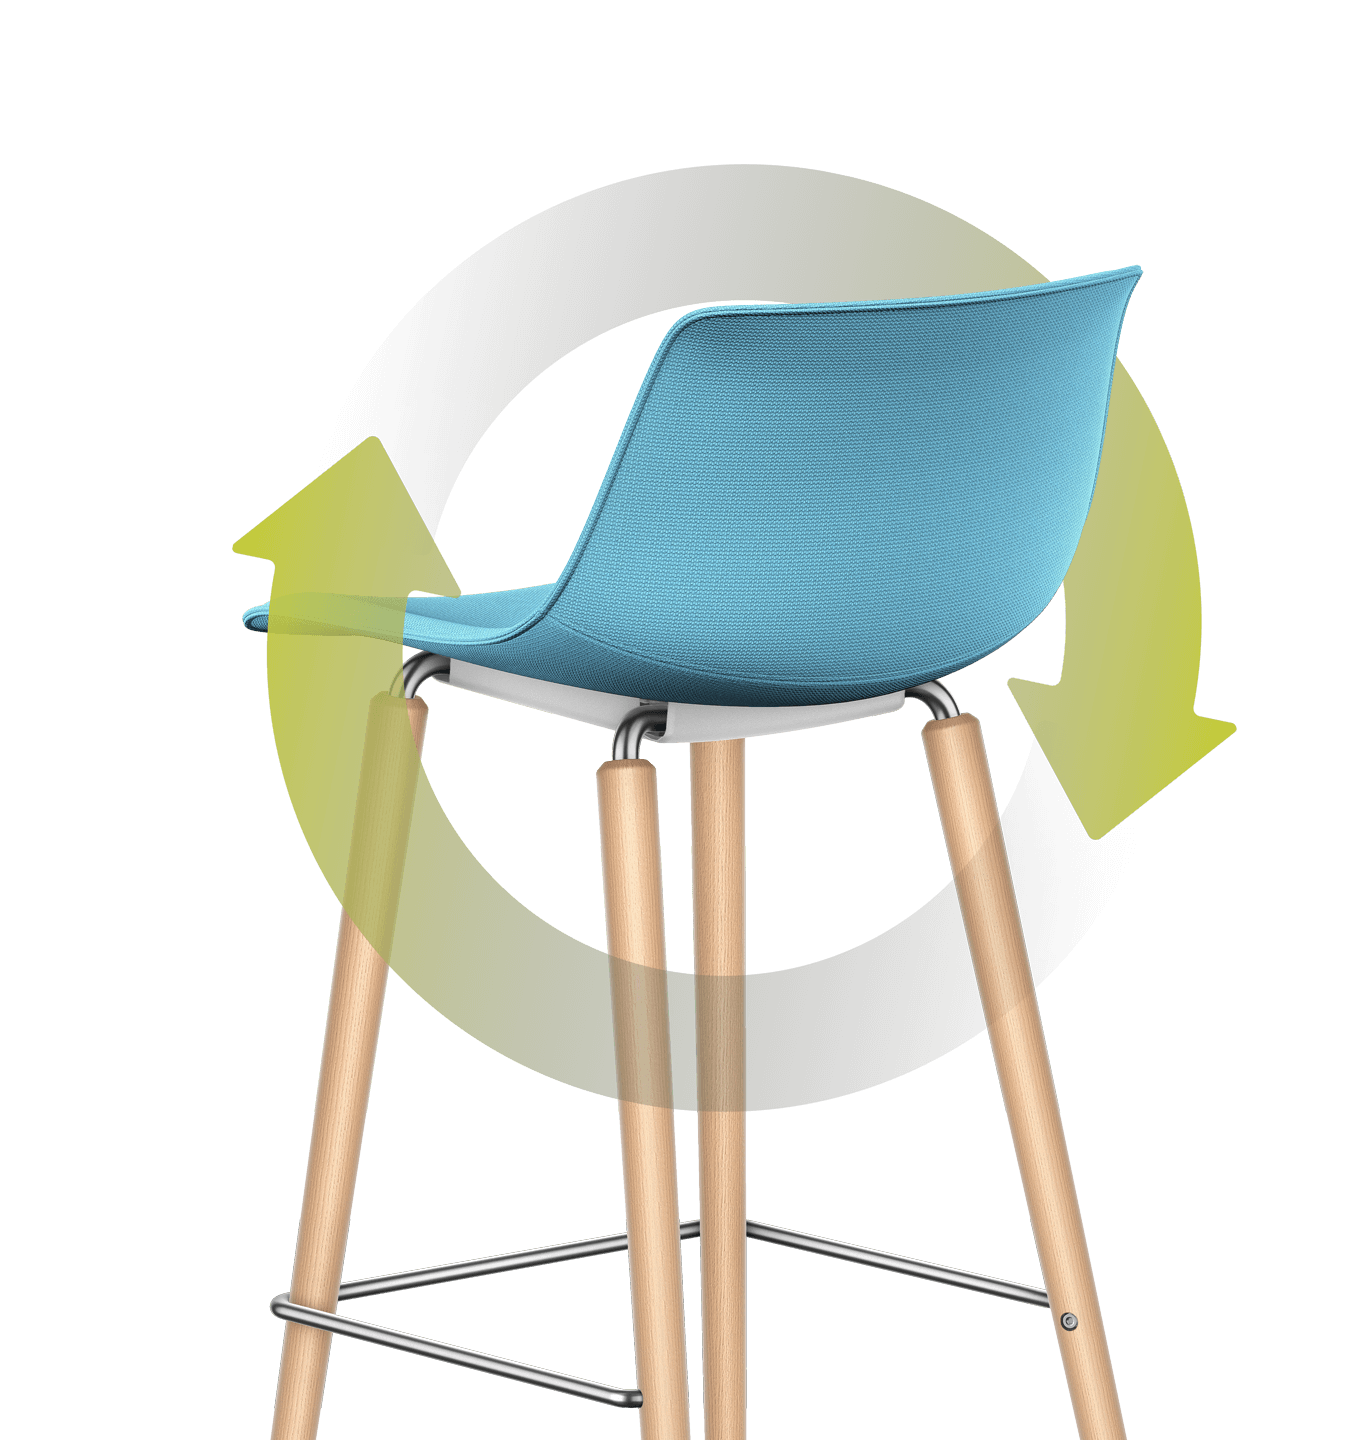 Om de barstoel met blauw gestoffeerde zitting en rugleuning en vierpoots houten frame slingert zich een geïllustreerd groen blad. De stengel wentelt zich in een cirkel om de stoel, en het blad leunt tegen de achterzijde van de gestoffeerde rugleuning.